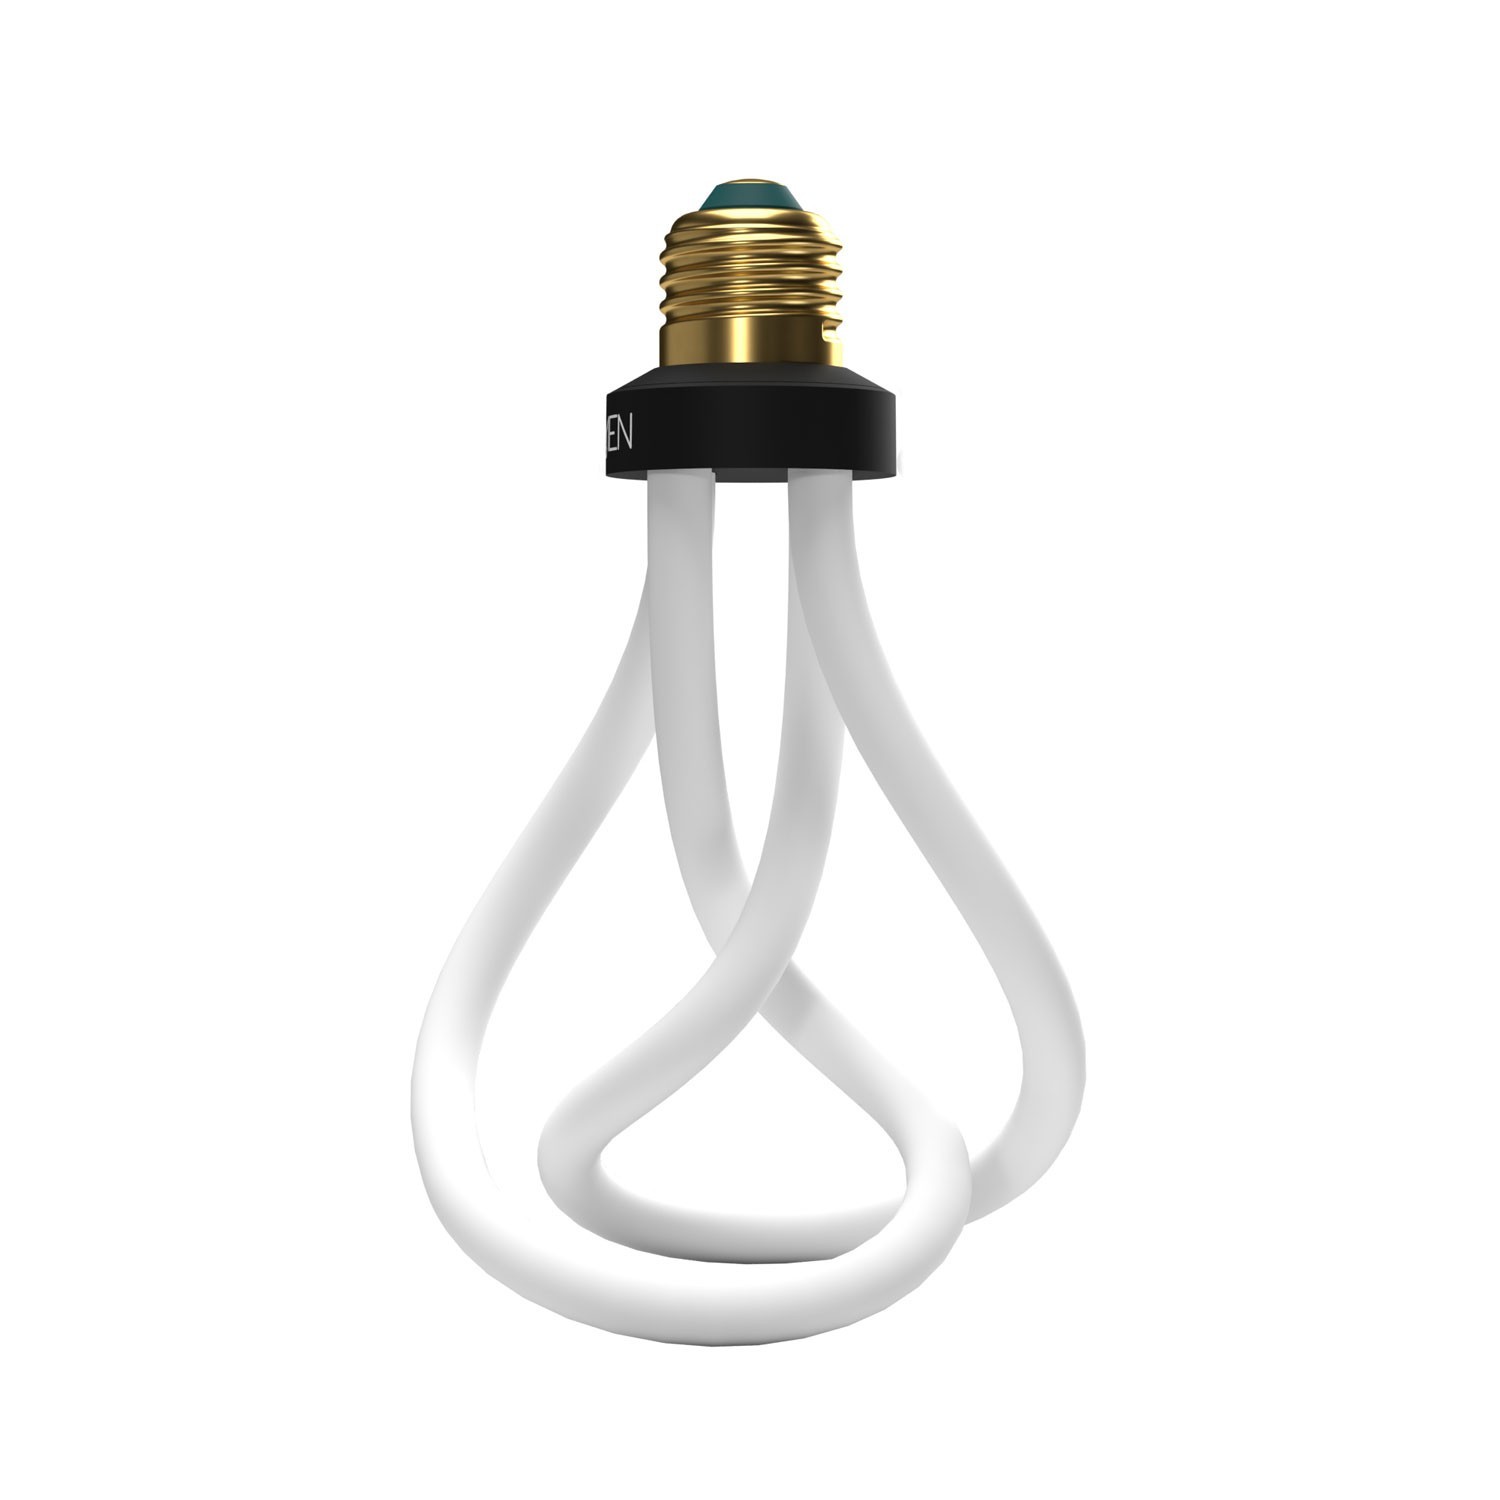 LED Light Bulb Plumen 001 6,5W 500Lm E27 3500K Dimmable